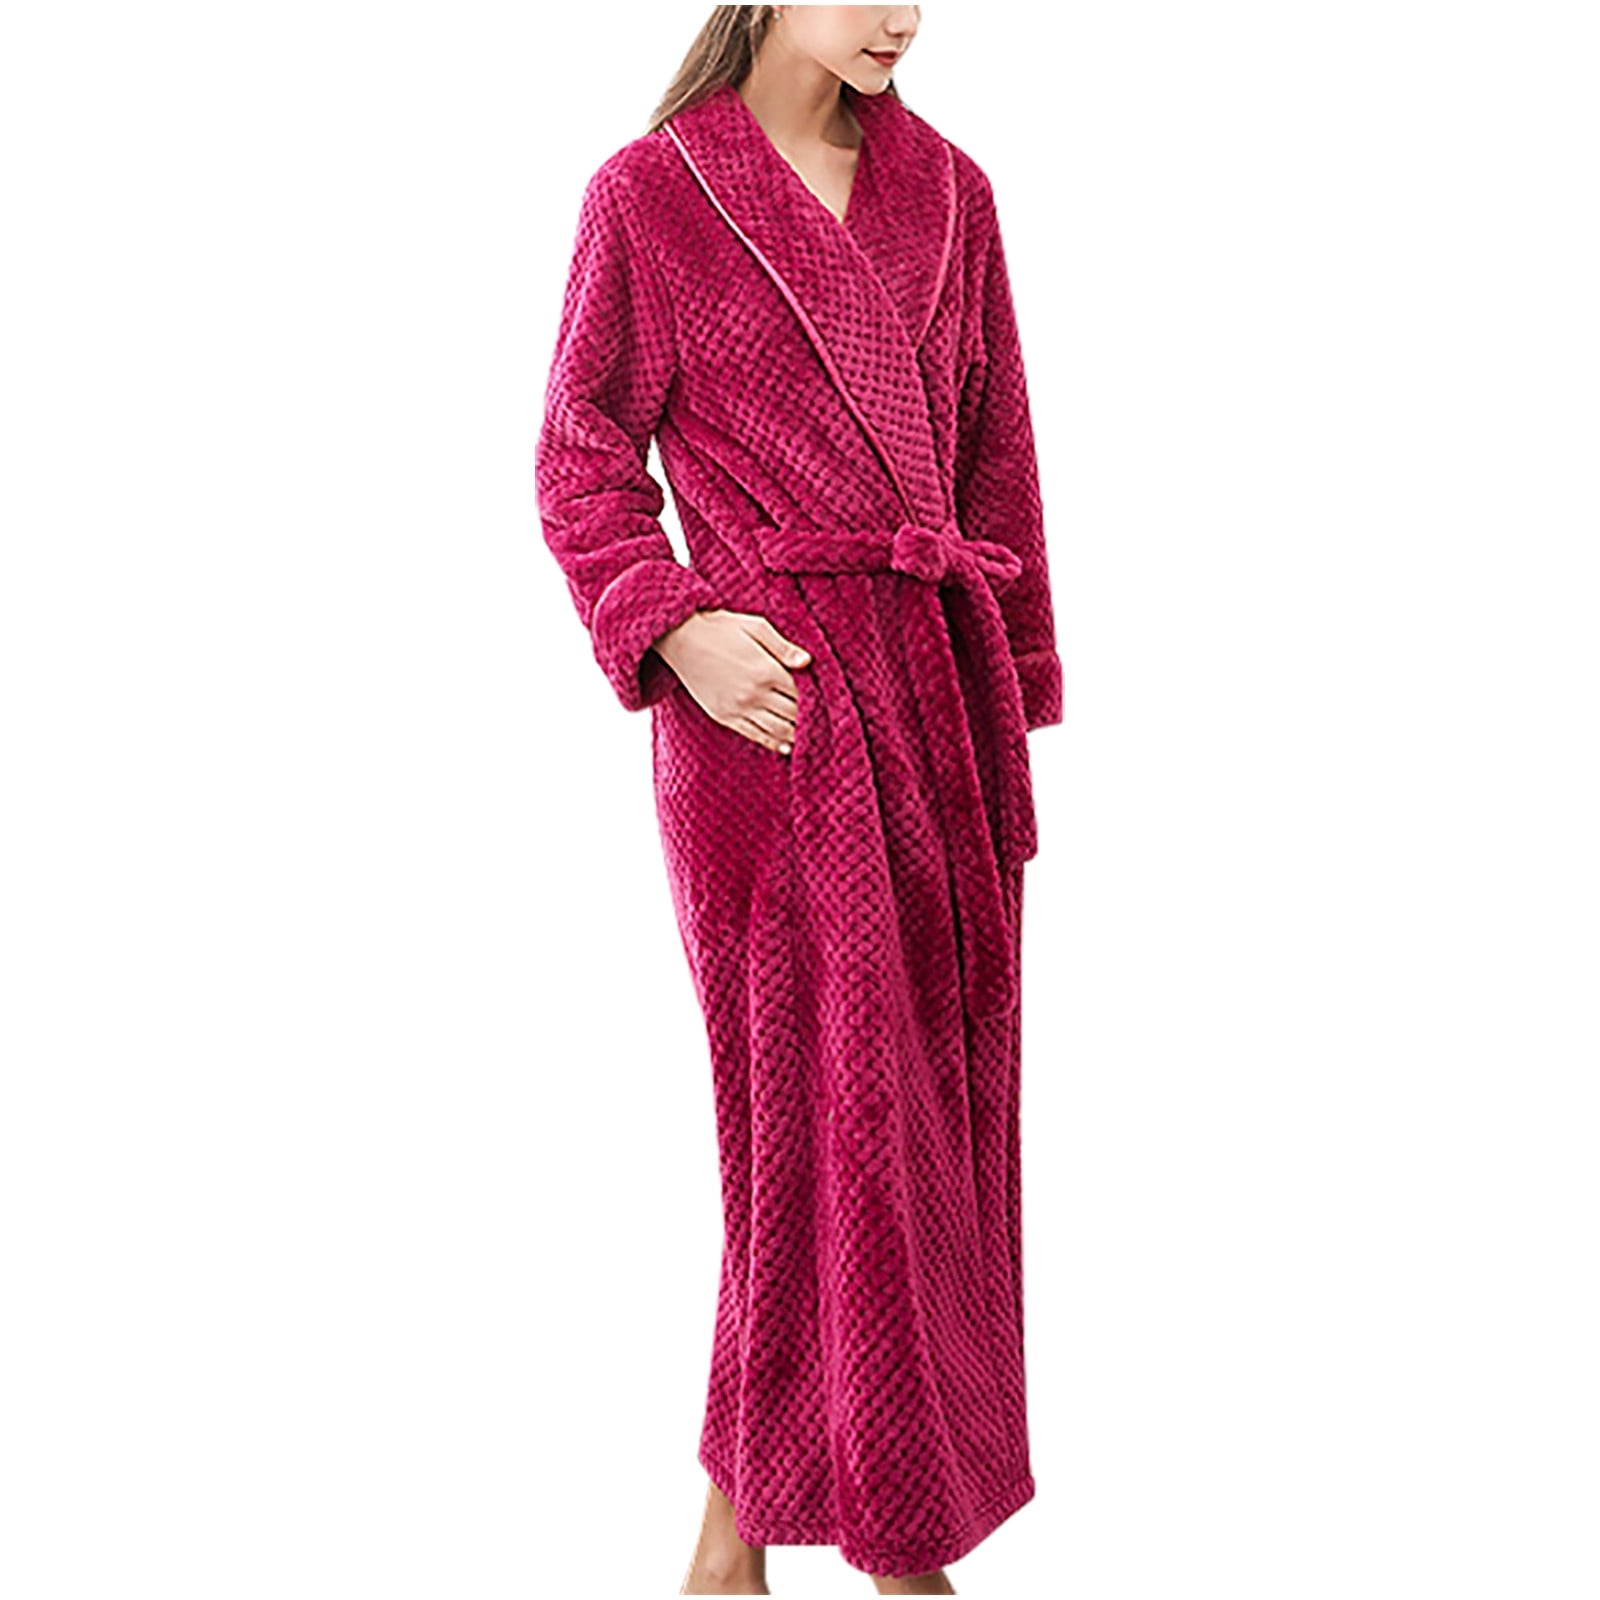 Carole Hochman Ladies Plush Wrap Soft Warm Long Robe Pink Pocket Faux Fur L  New